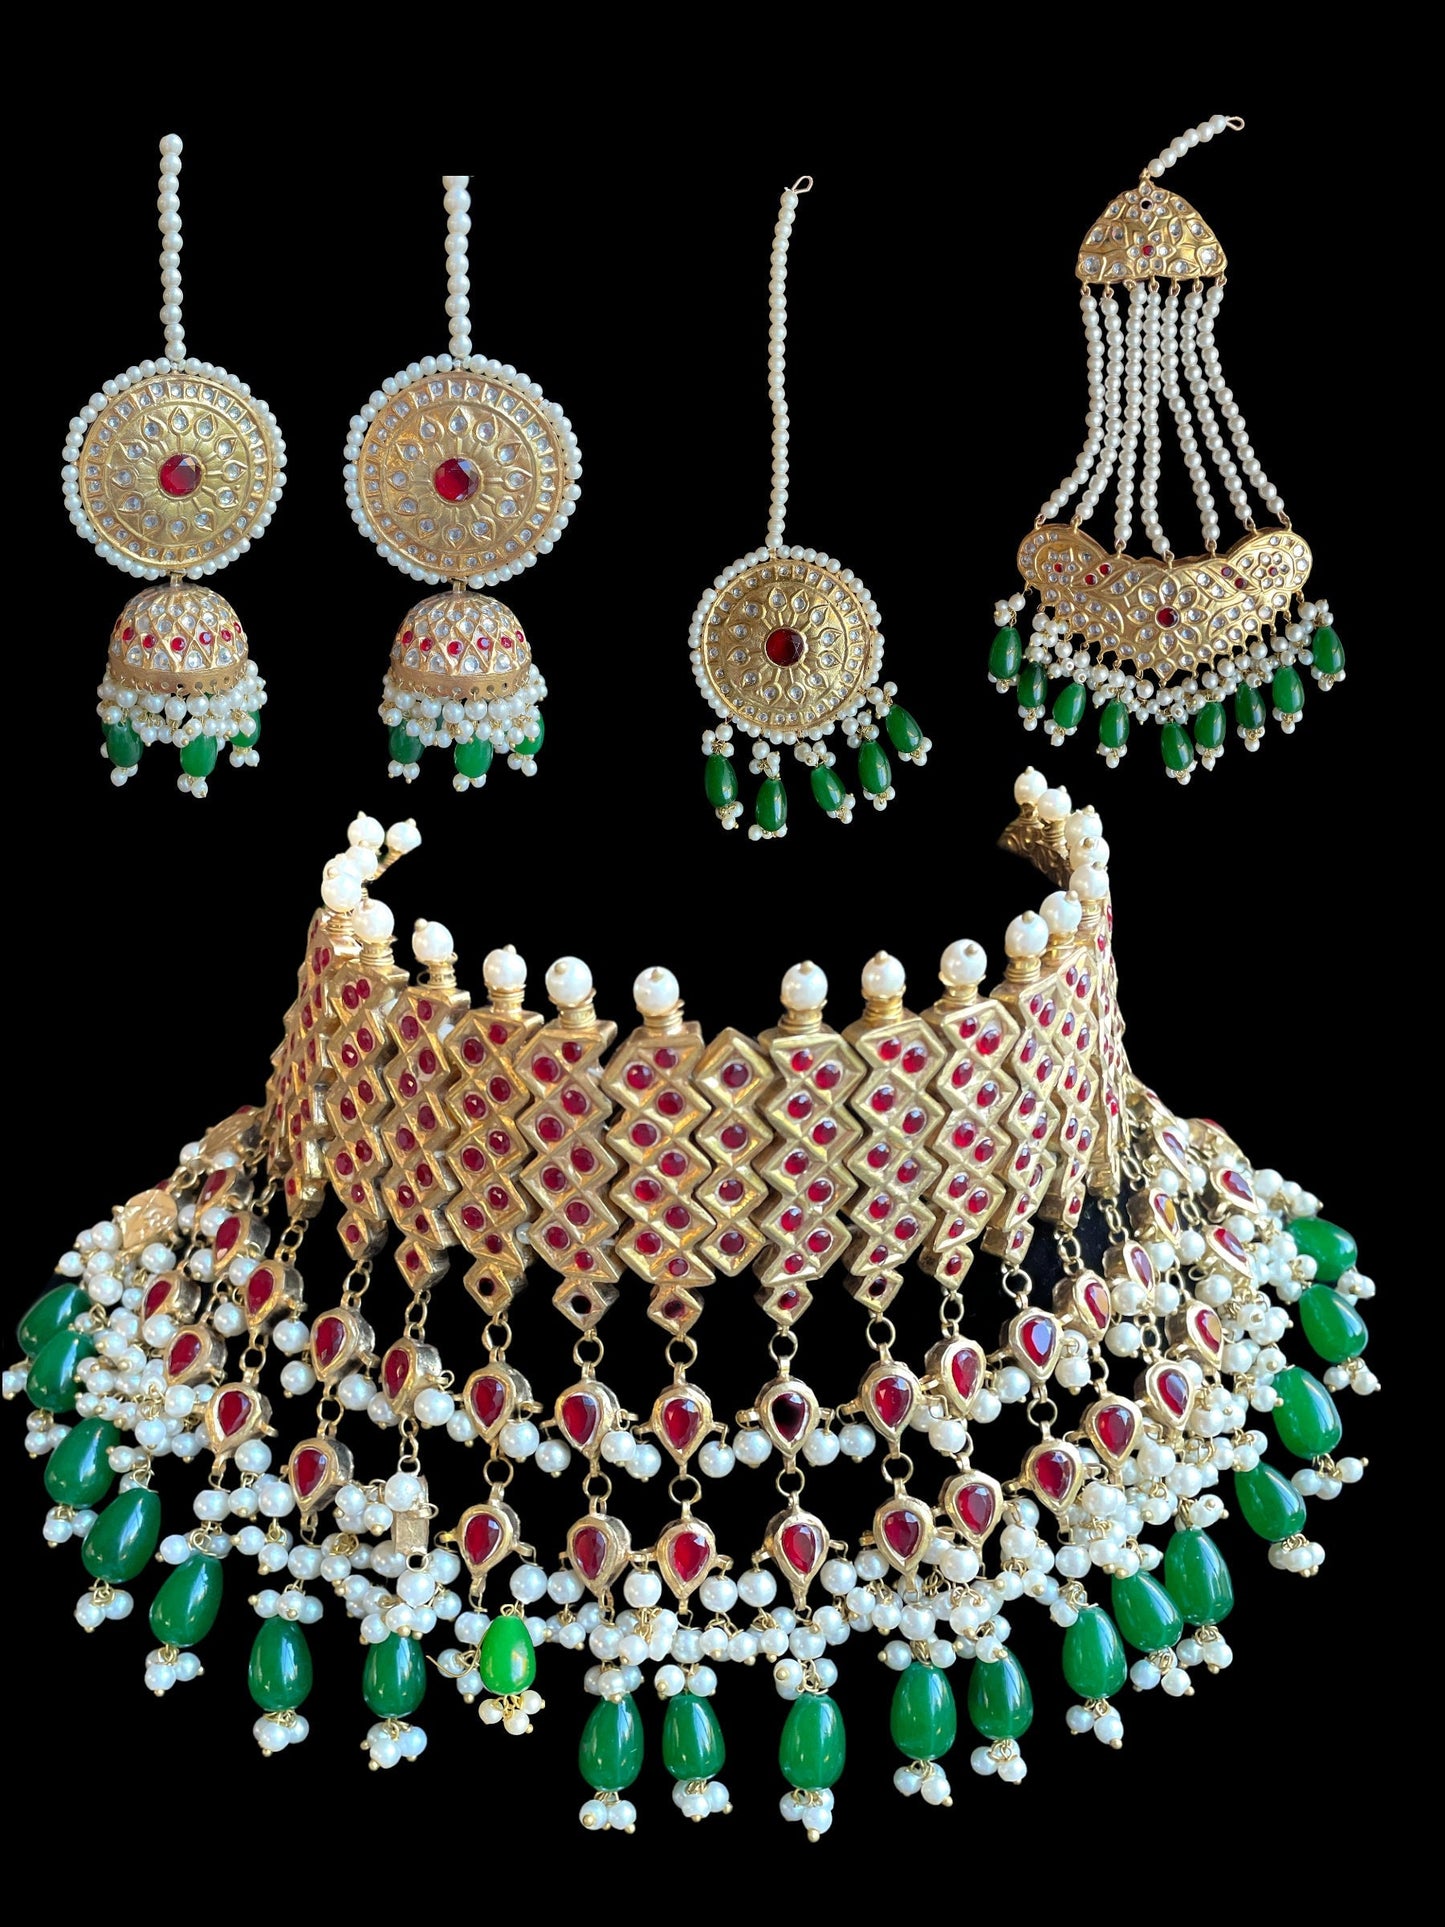 Joyería de oro rojo nupcial india, gargantilla nikkah de oro, joyería de boda paquistaní, conjunto nupcial de gargantilla verde dorado, conjunto nupcial con tikka jhumka jhumar